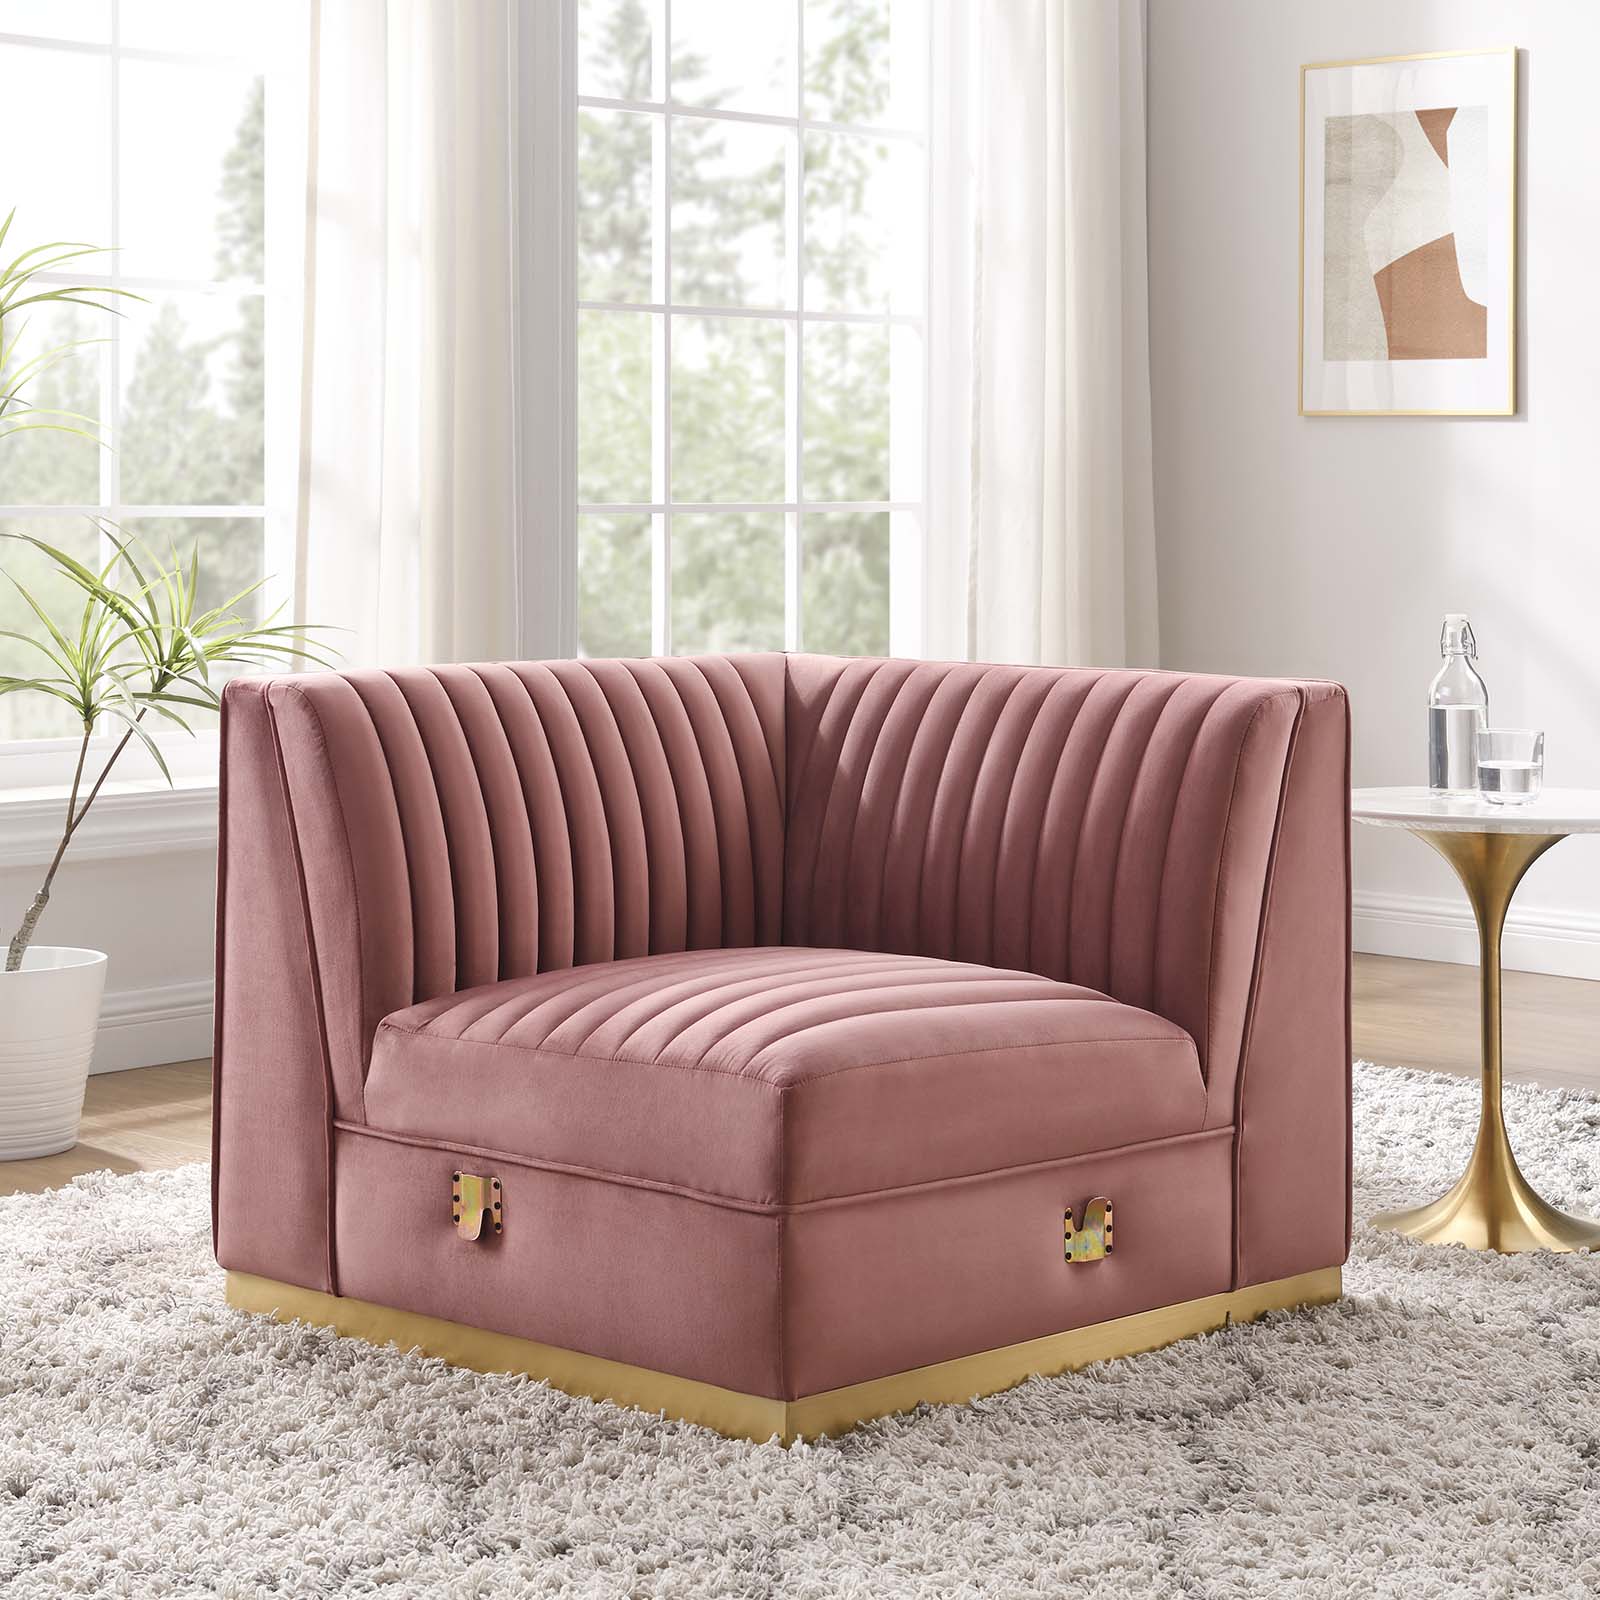 Sanguine Channel Tufted Performance Velvet Modular Sectional Sofa Left Corner Chair - East Shore Modern Home Furnishings